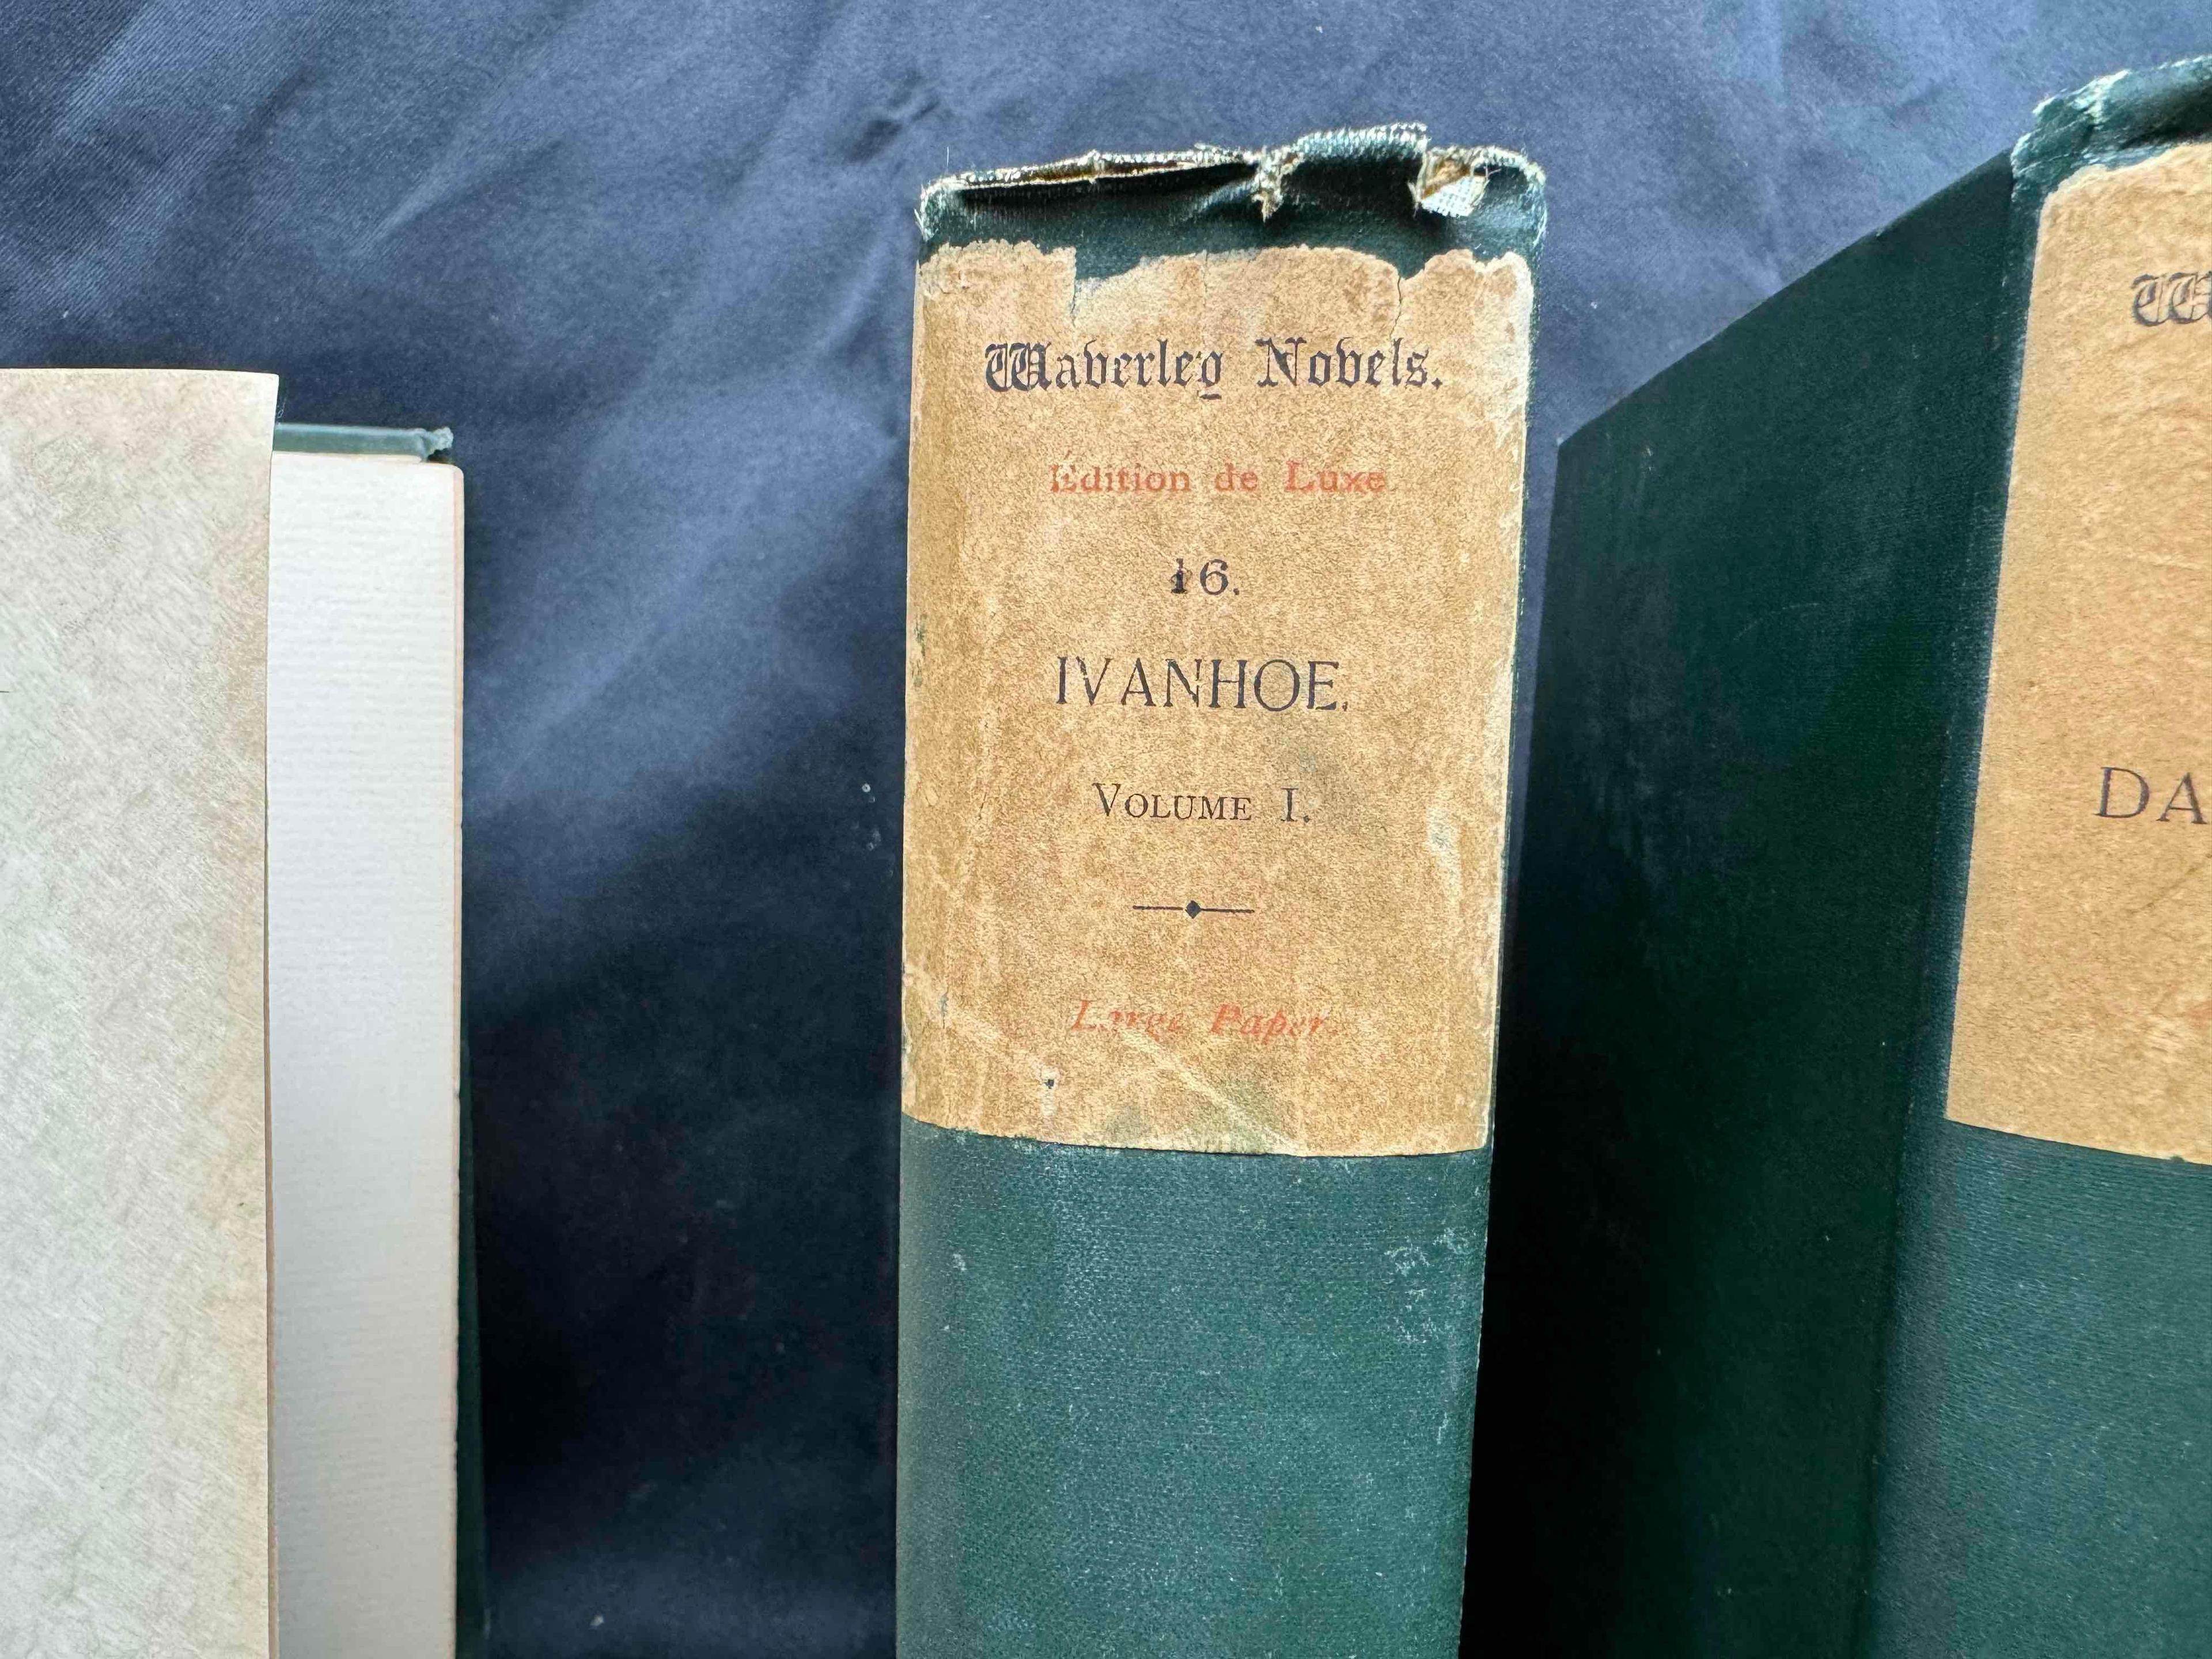 Antique Books 1890s Waverly Novels by SIR WALTER SCOTT, BART